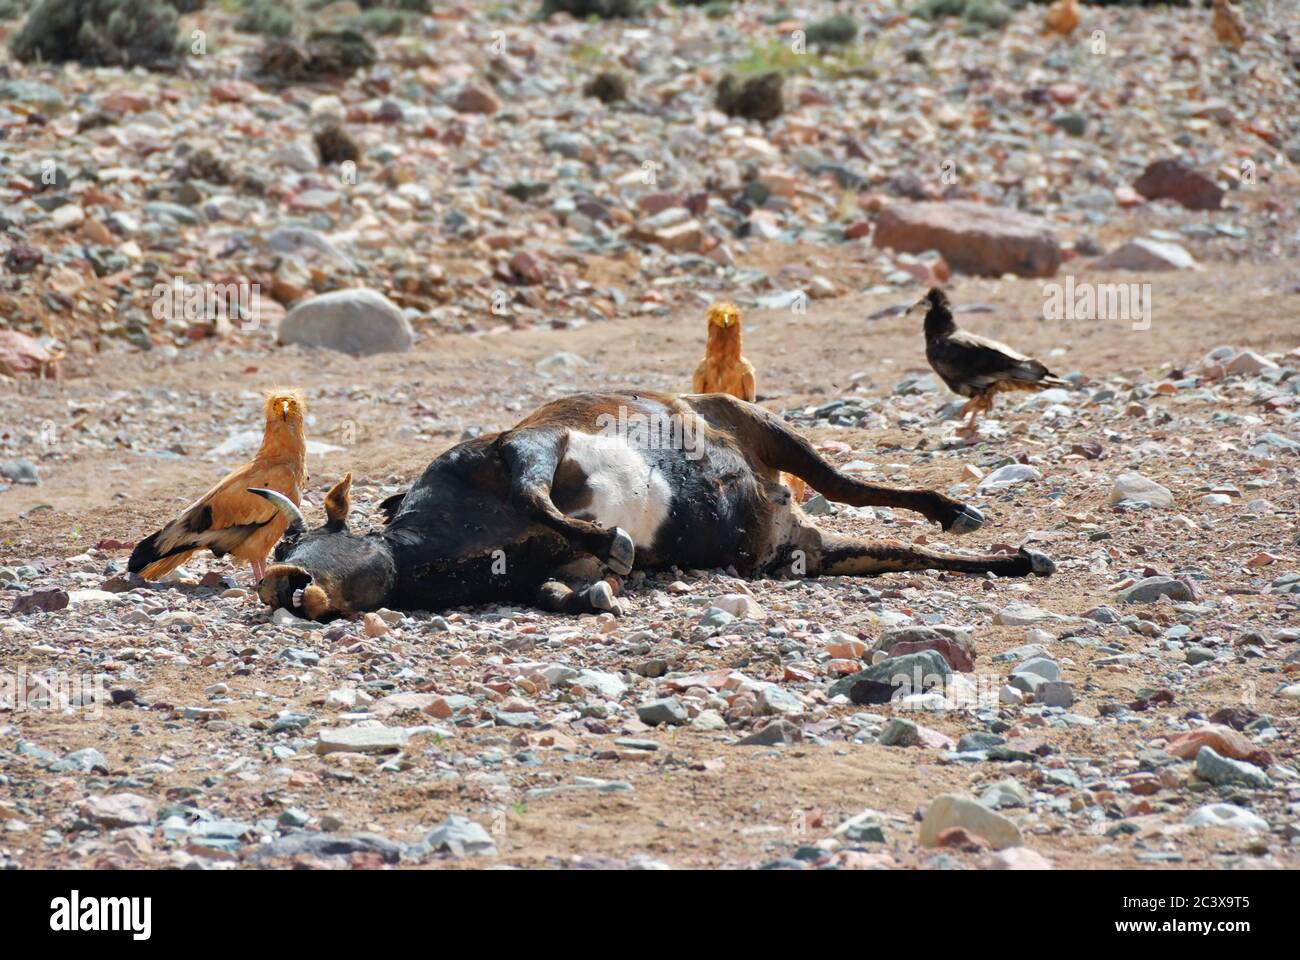 Leiche der toten Kuh auf dem Boden, umgeben von Geiern. Insel Socotra, Jemen Stockfoto